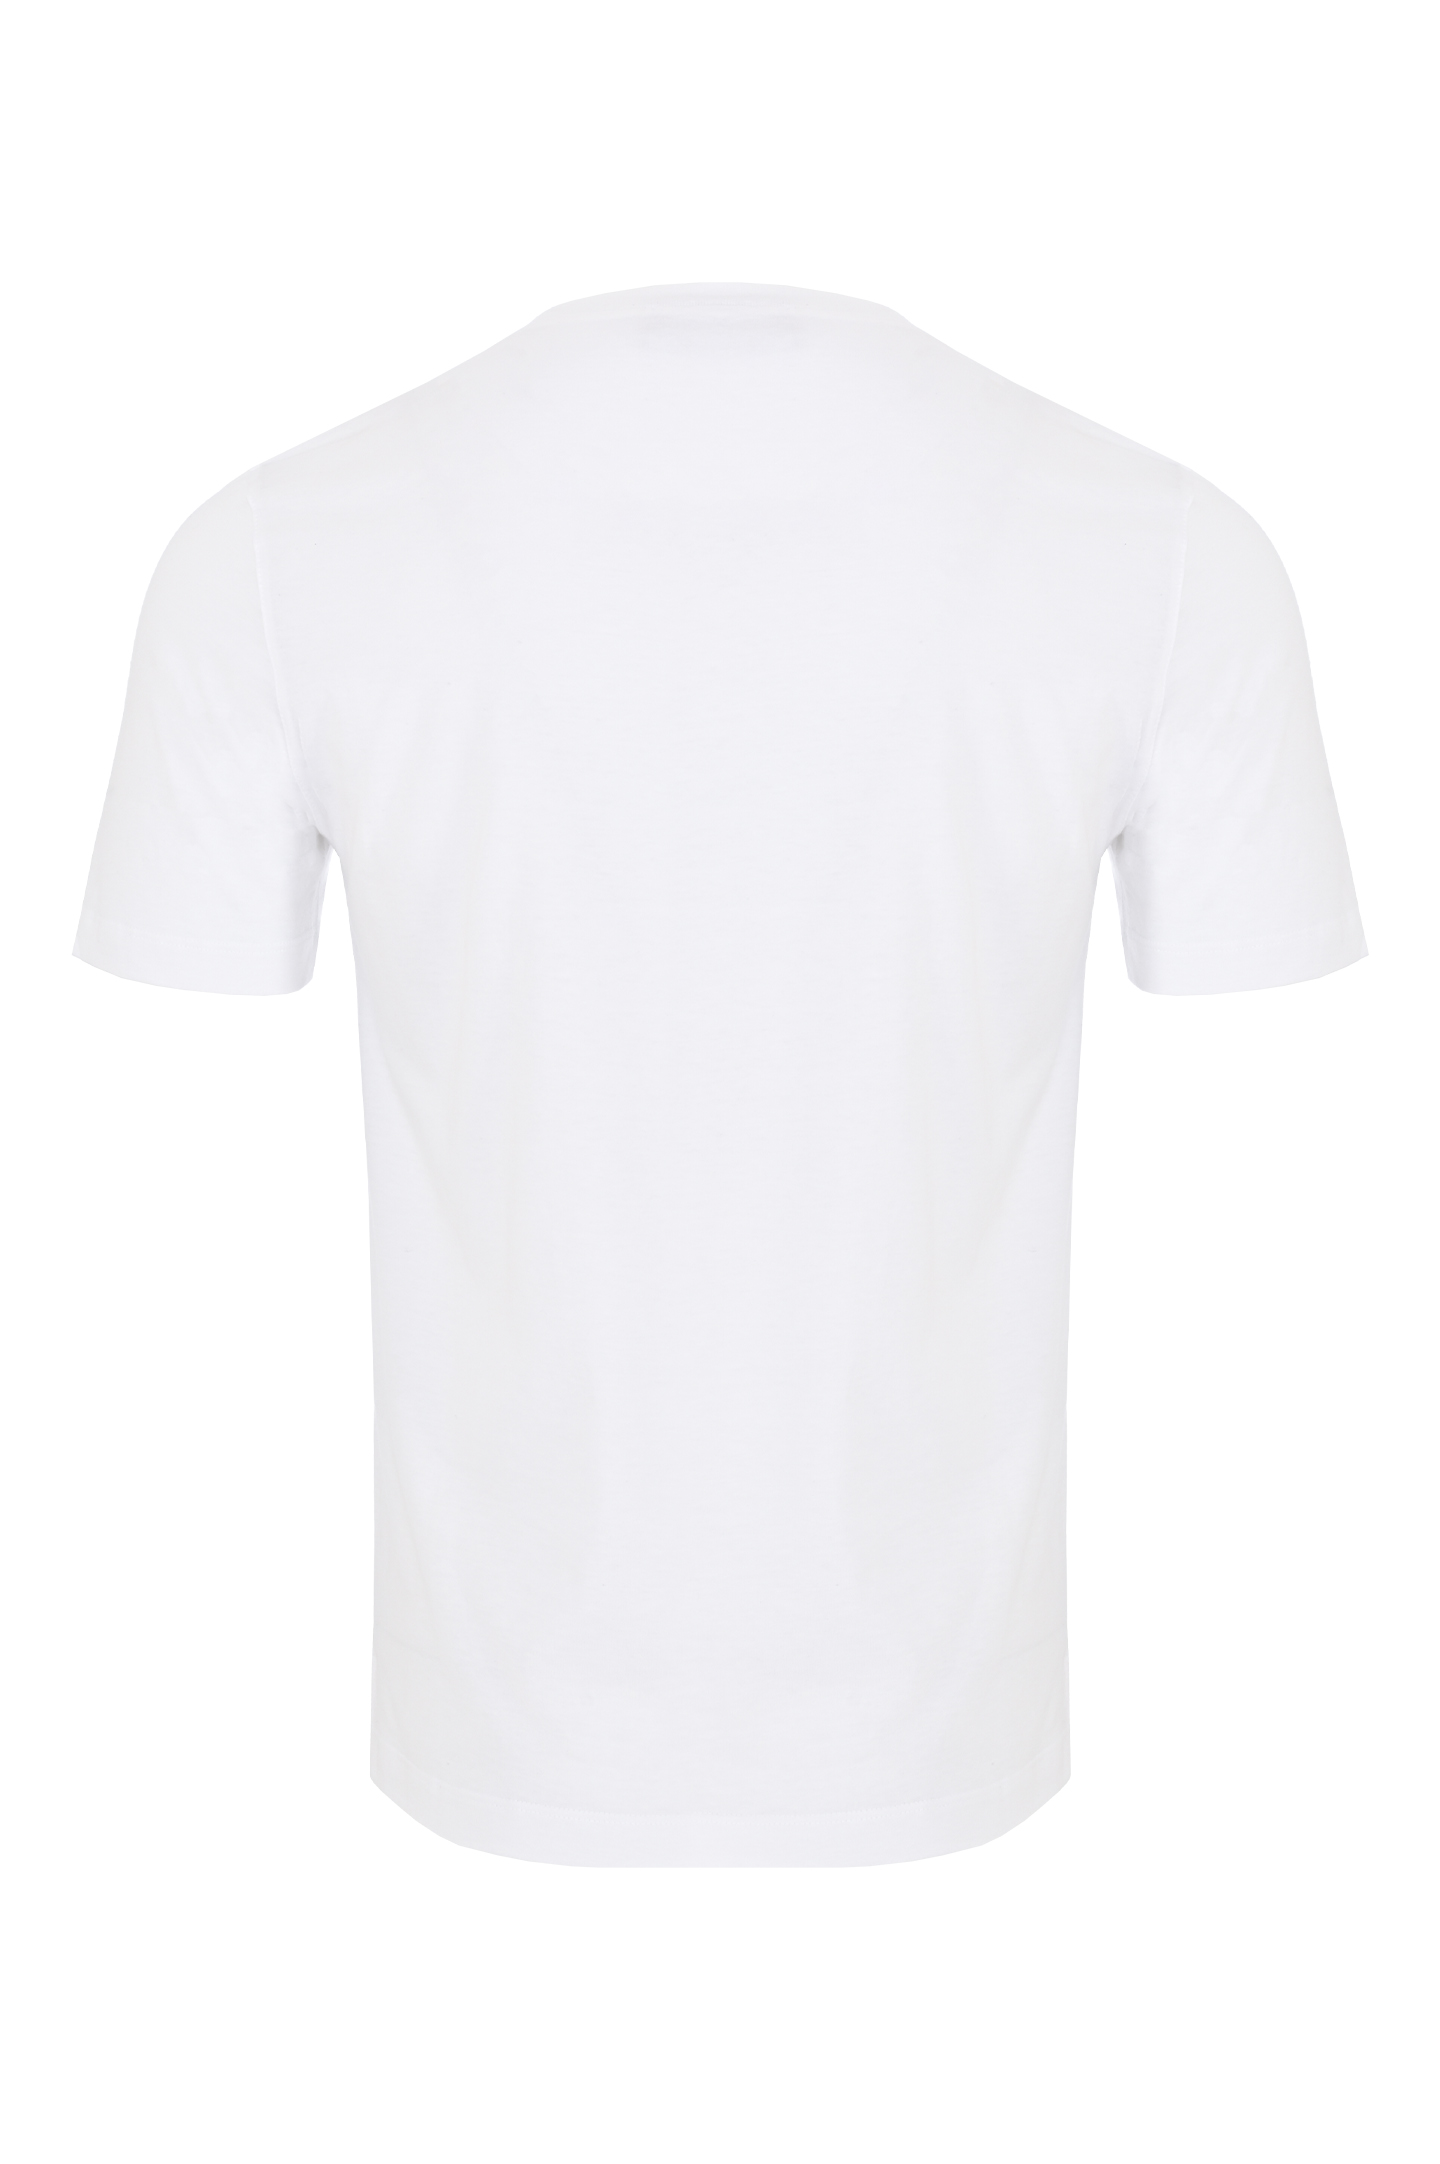 Хлопковая футболка с логотипом CANALI MJ02039 T0806, цвет: Белый, Мужской